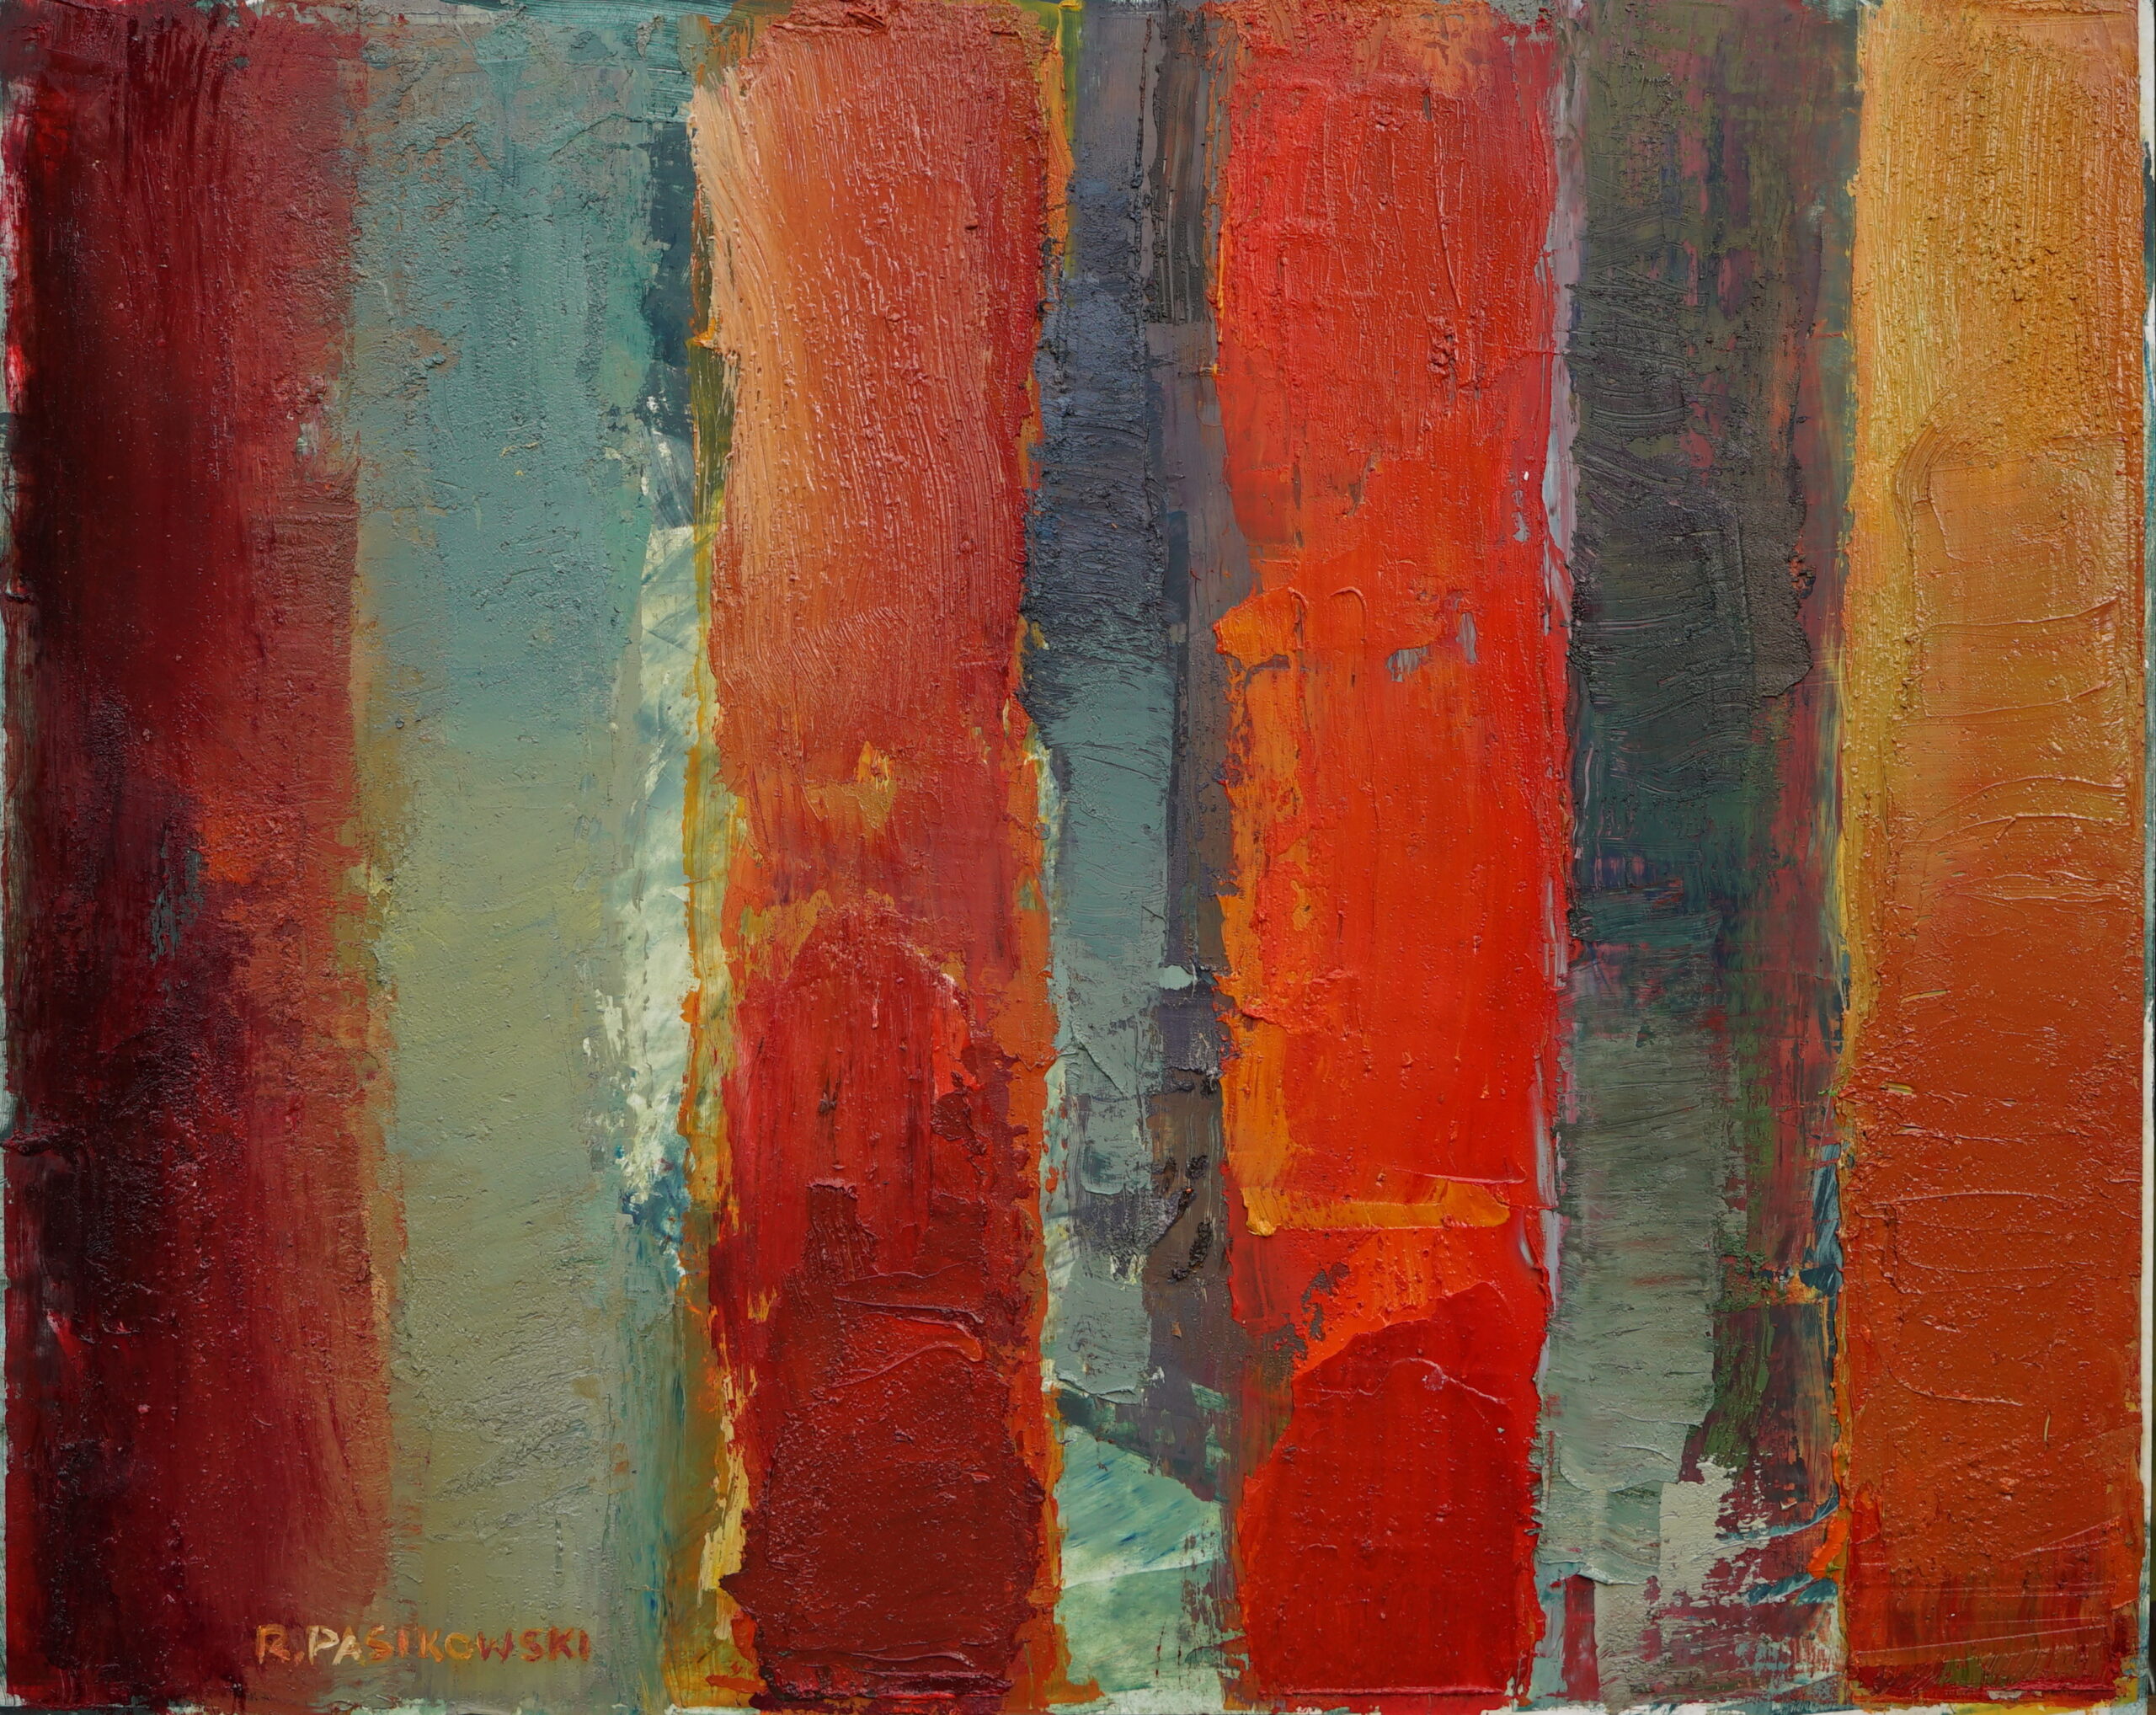 Obraz Olejny abstrakcyjny w kolorystyce czerwono-błękitnej. Na obrazie cztery pionowe czerwono żółte pasy na błękitnym tle.